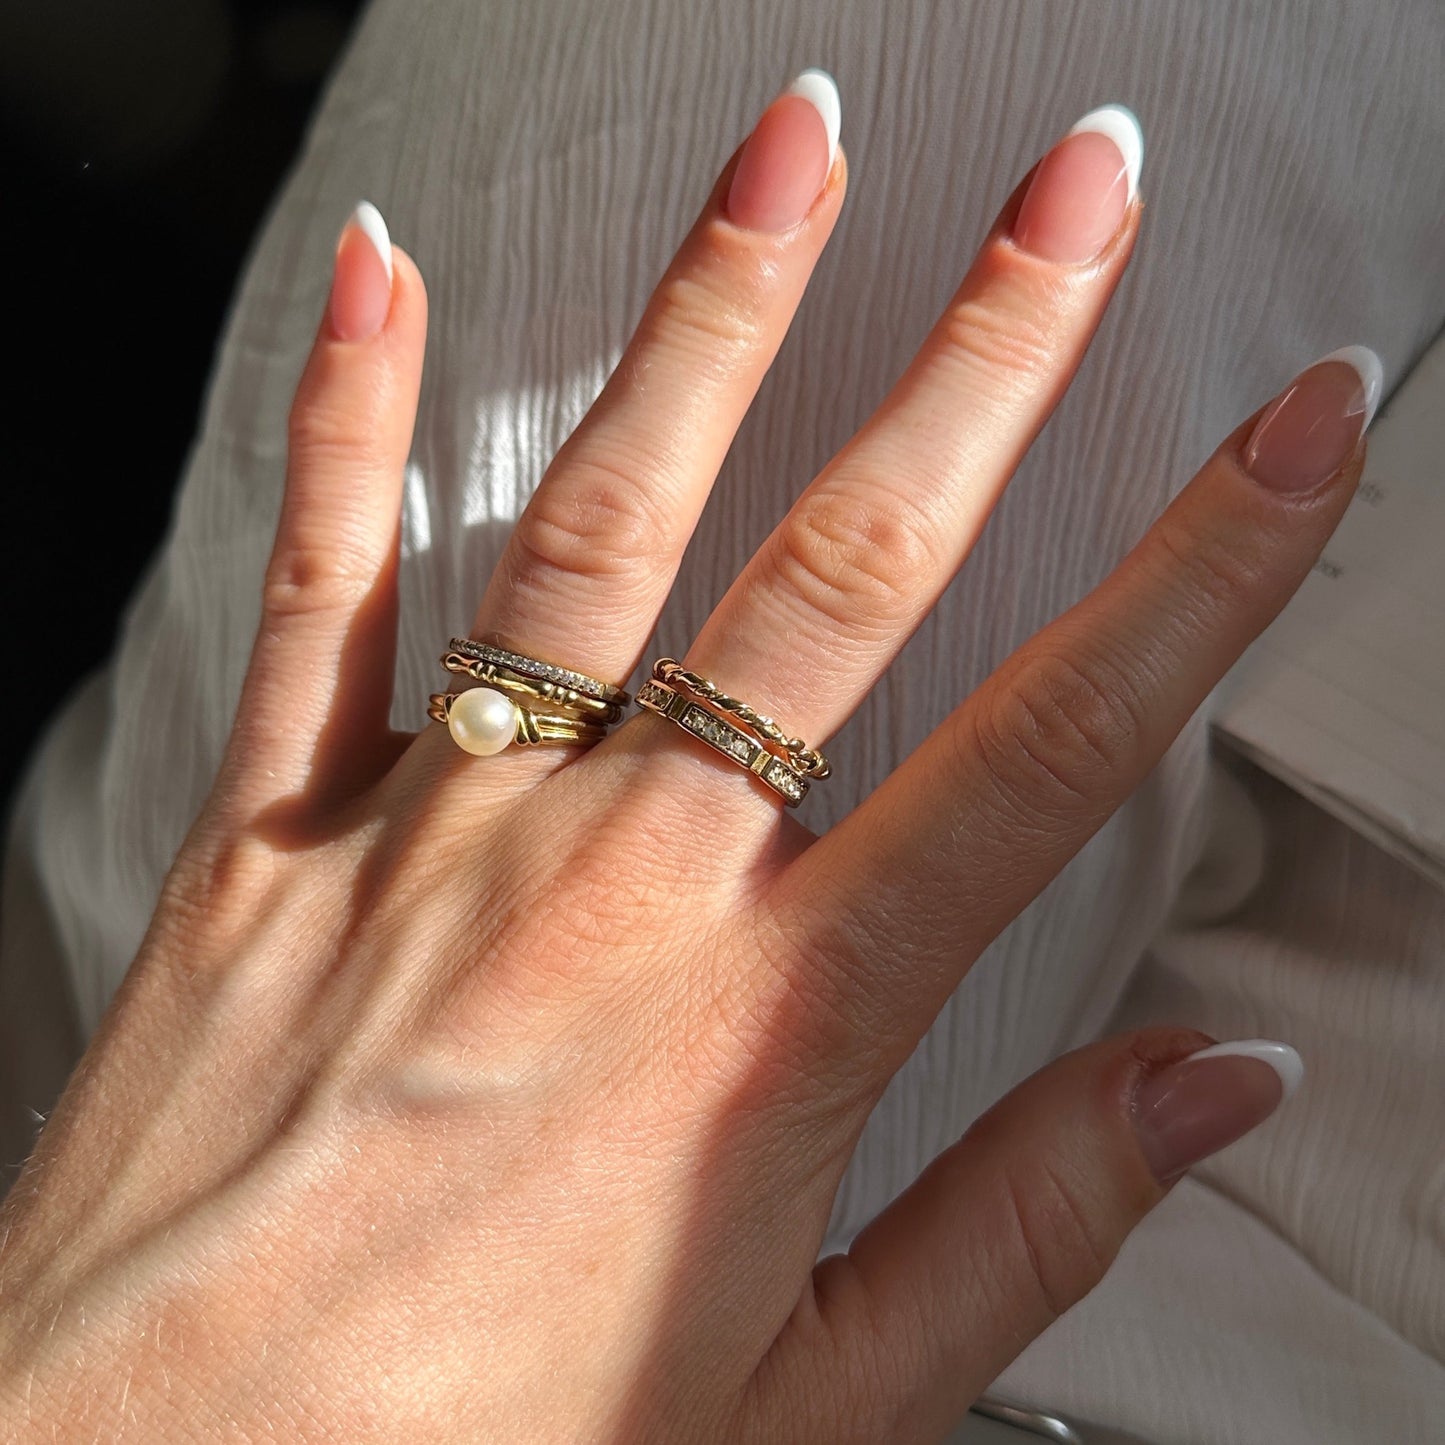 Goldener Ring mit Süßwasserperle getragen an Hand im Sonnenschein, zusammen mit weiteren goldenen Ringen